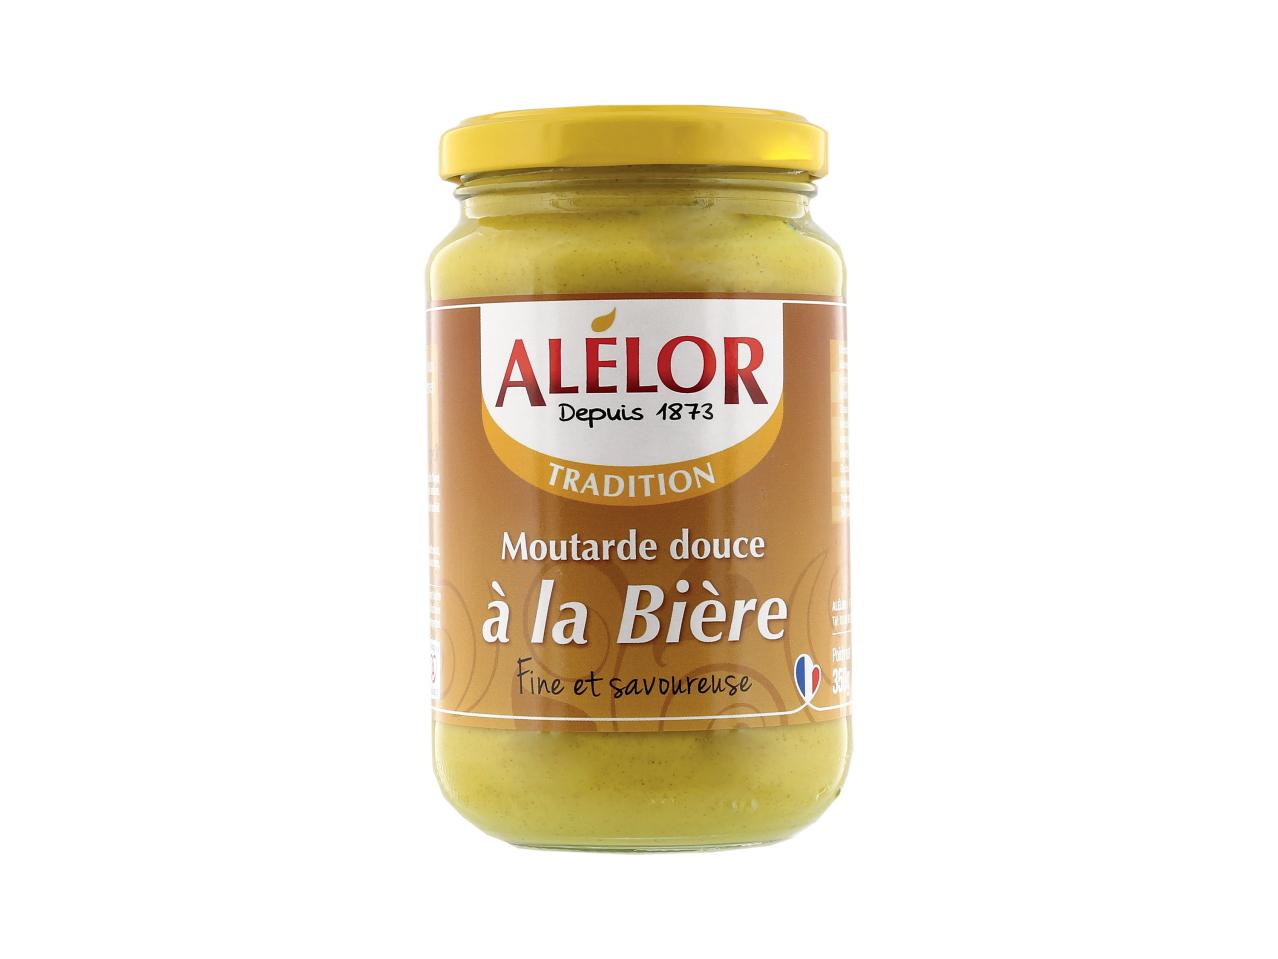 Moutarde douce d'Alsace1